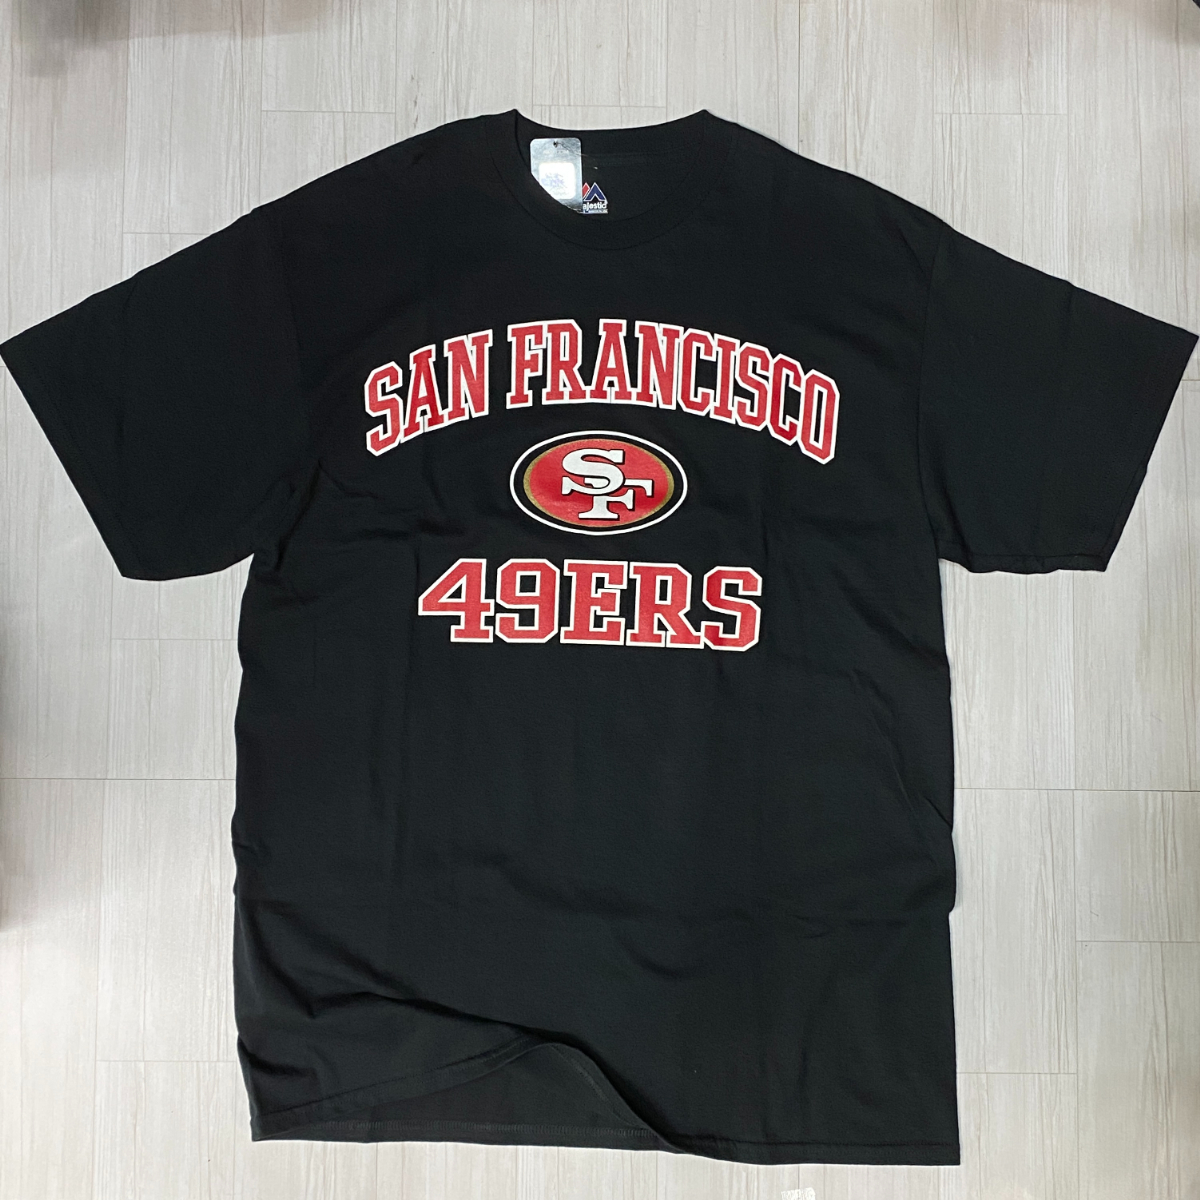 USA正規品 【XL】 MAJESTIC USA マジェスティック NFL公式 49ers サンフランシスコ フォーティナイナーズ半袖 Tシャツ 黒 アメフト